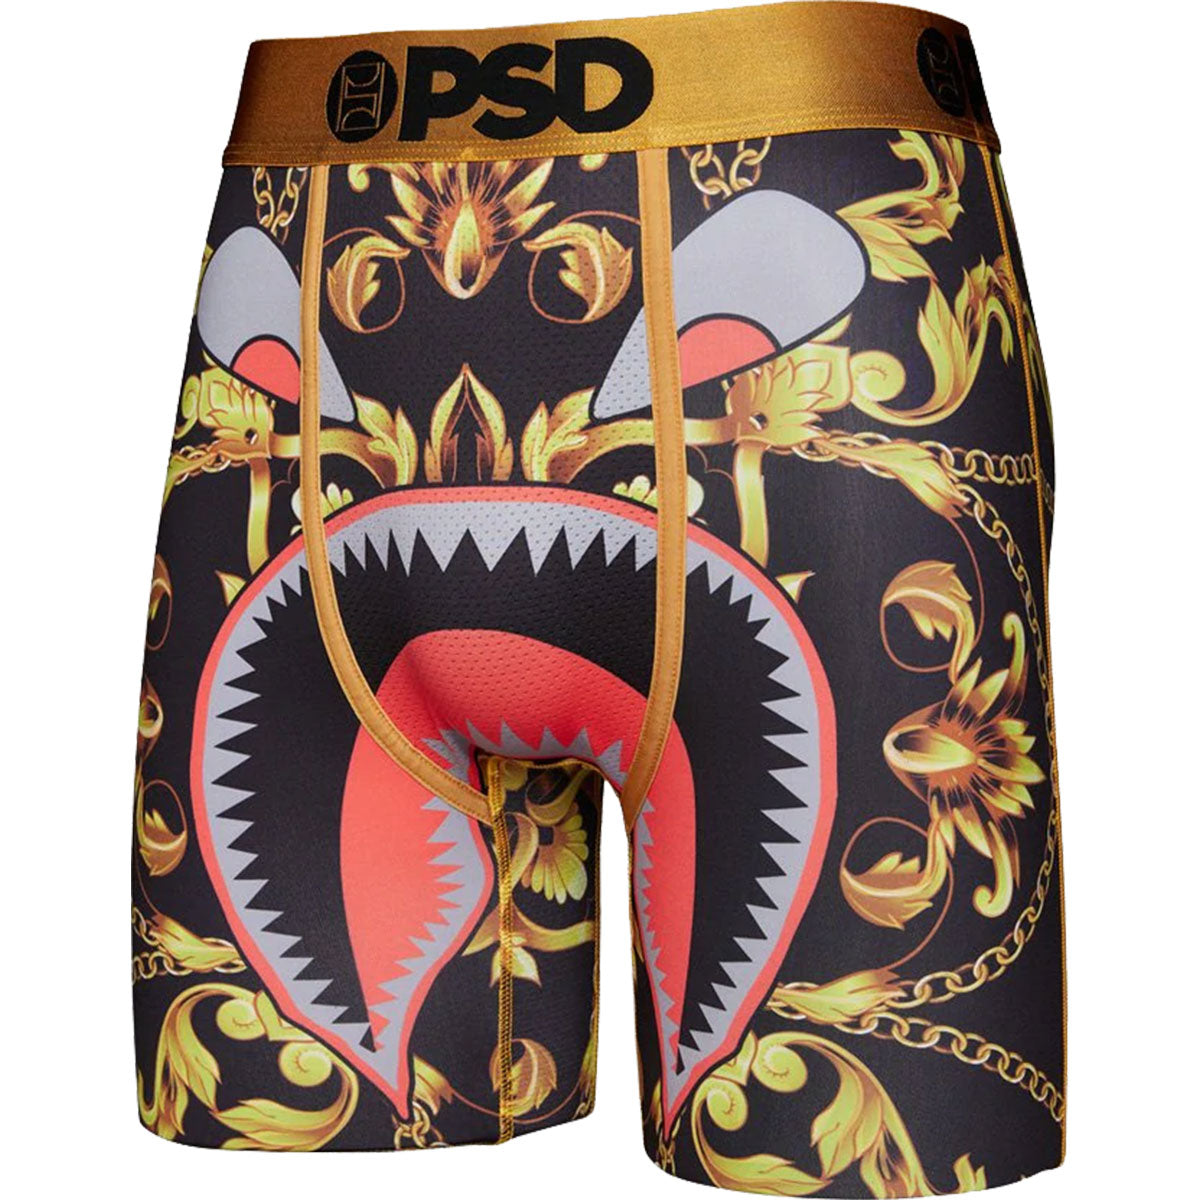 PSD Warface Luxury Boxer Men's Bottom Underwear (Refurbished